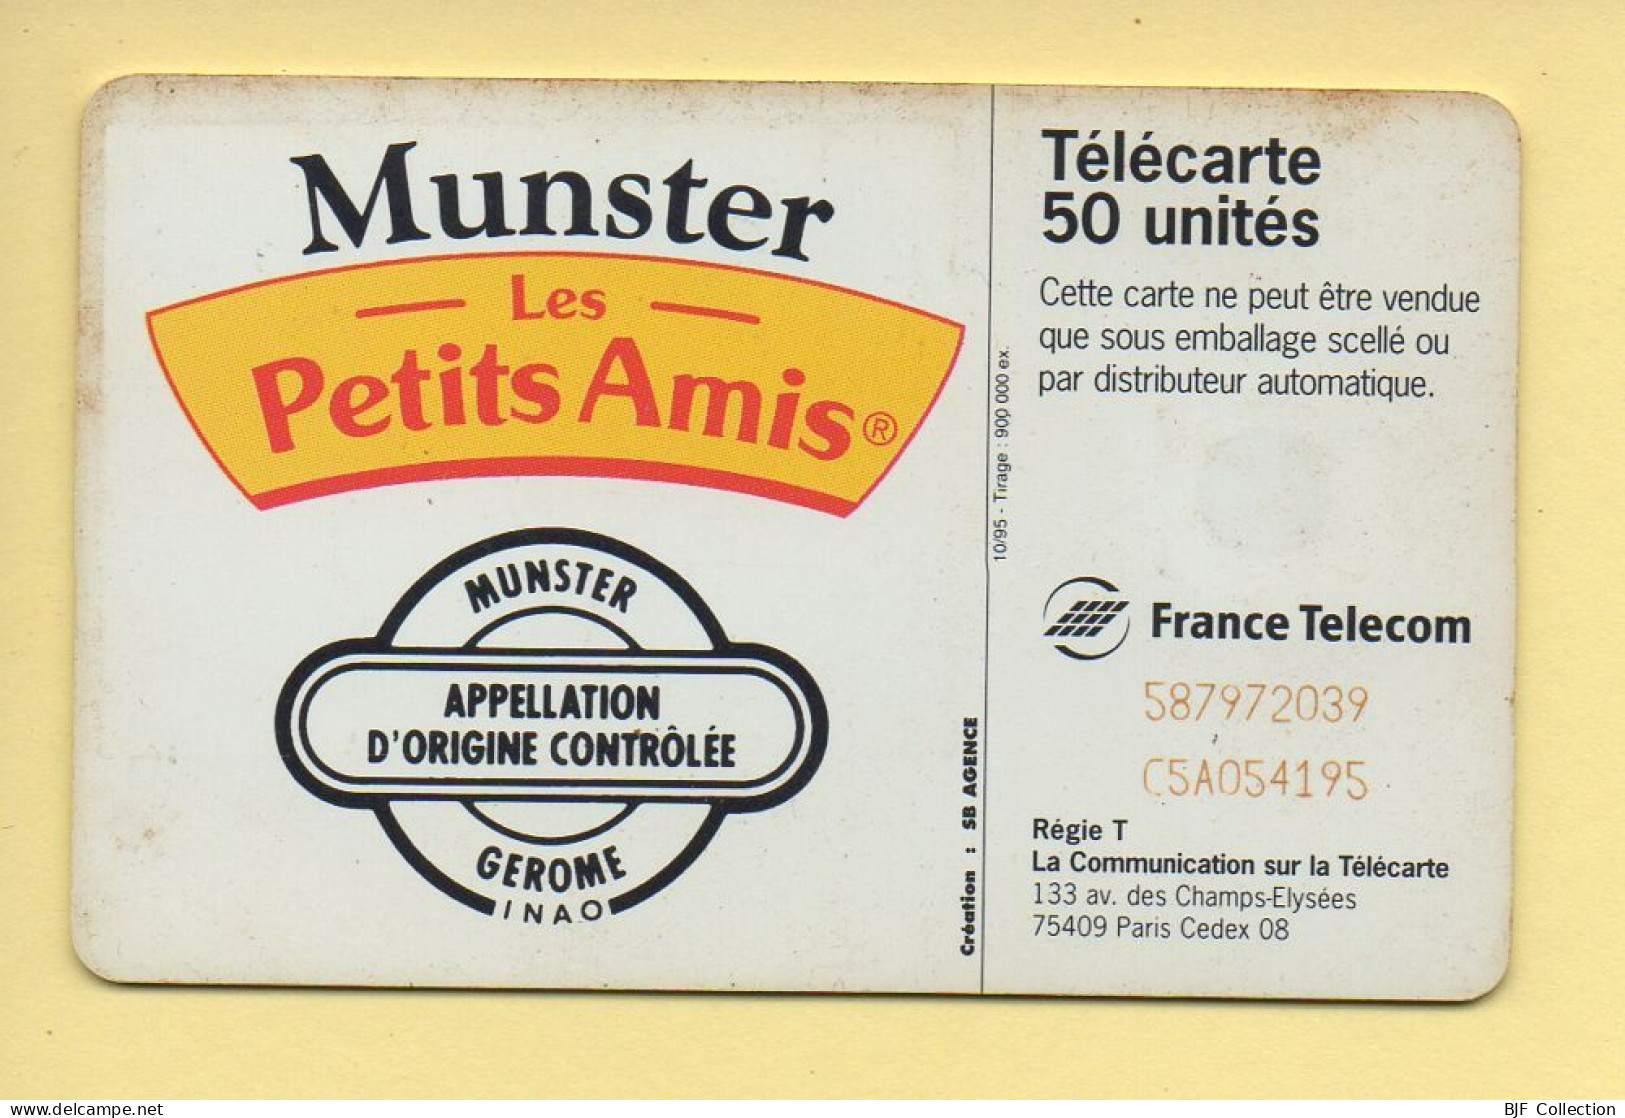 Télécarte 1995 : MUNSTER LES PETITS AMIS / 50 Unités / 10-95 (voir Puce Et Numéro Au Dos) - 1995